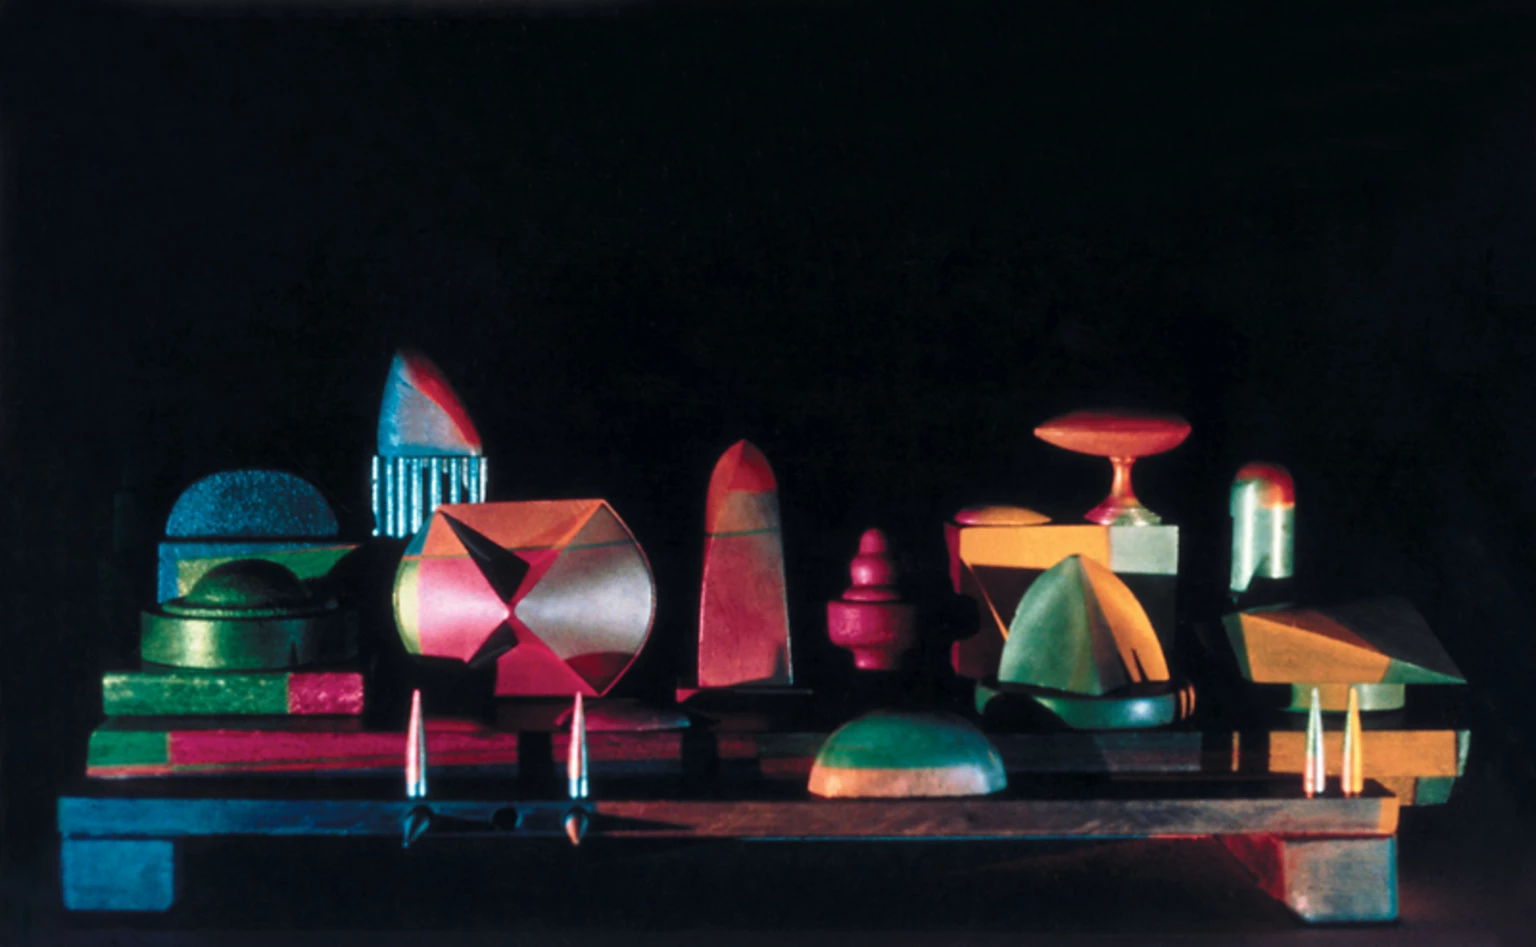 Scene, 1988 - experimental lighting